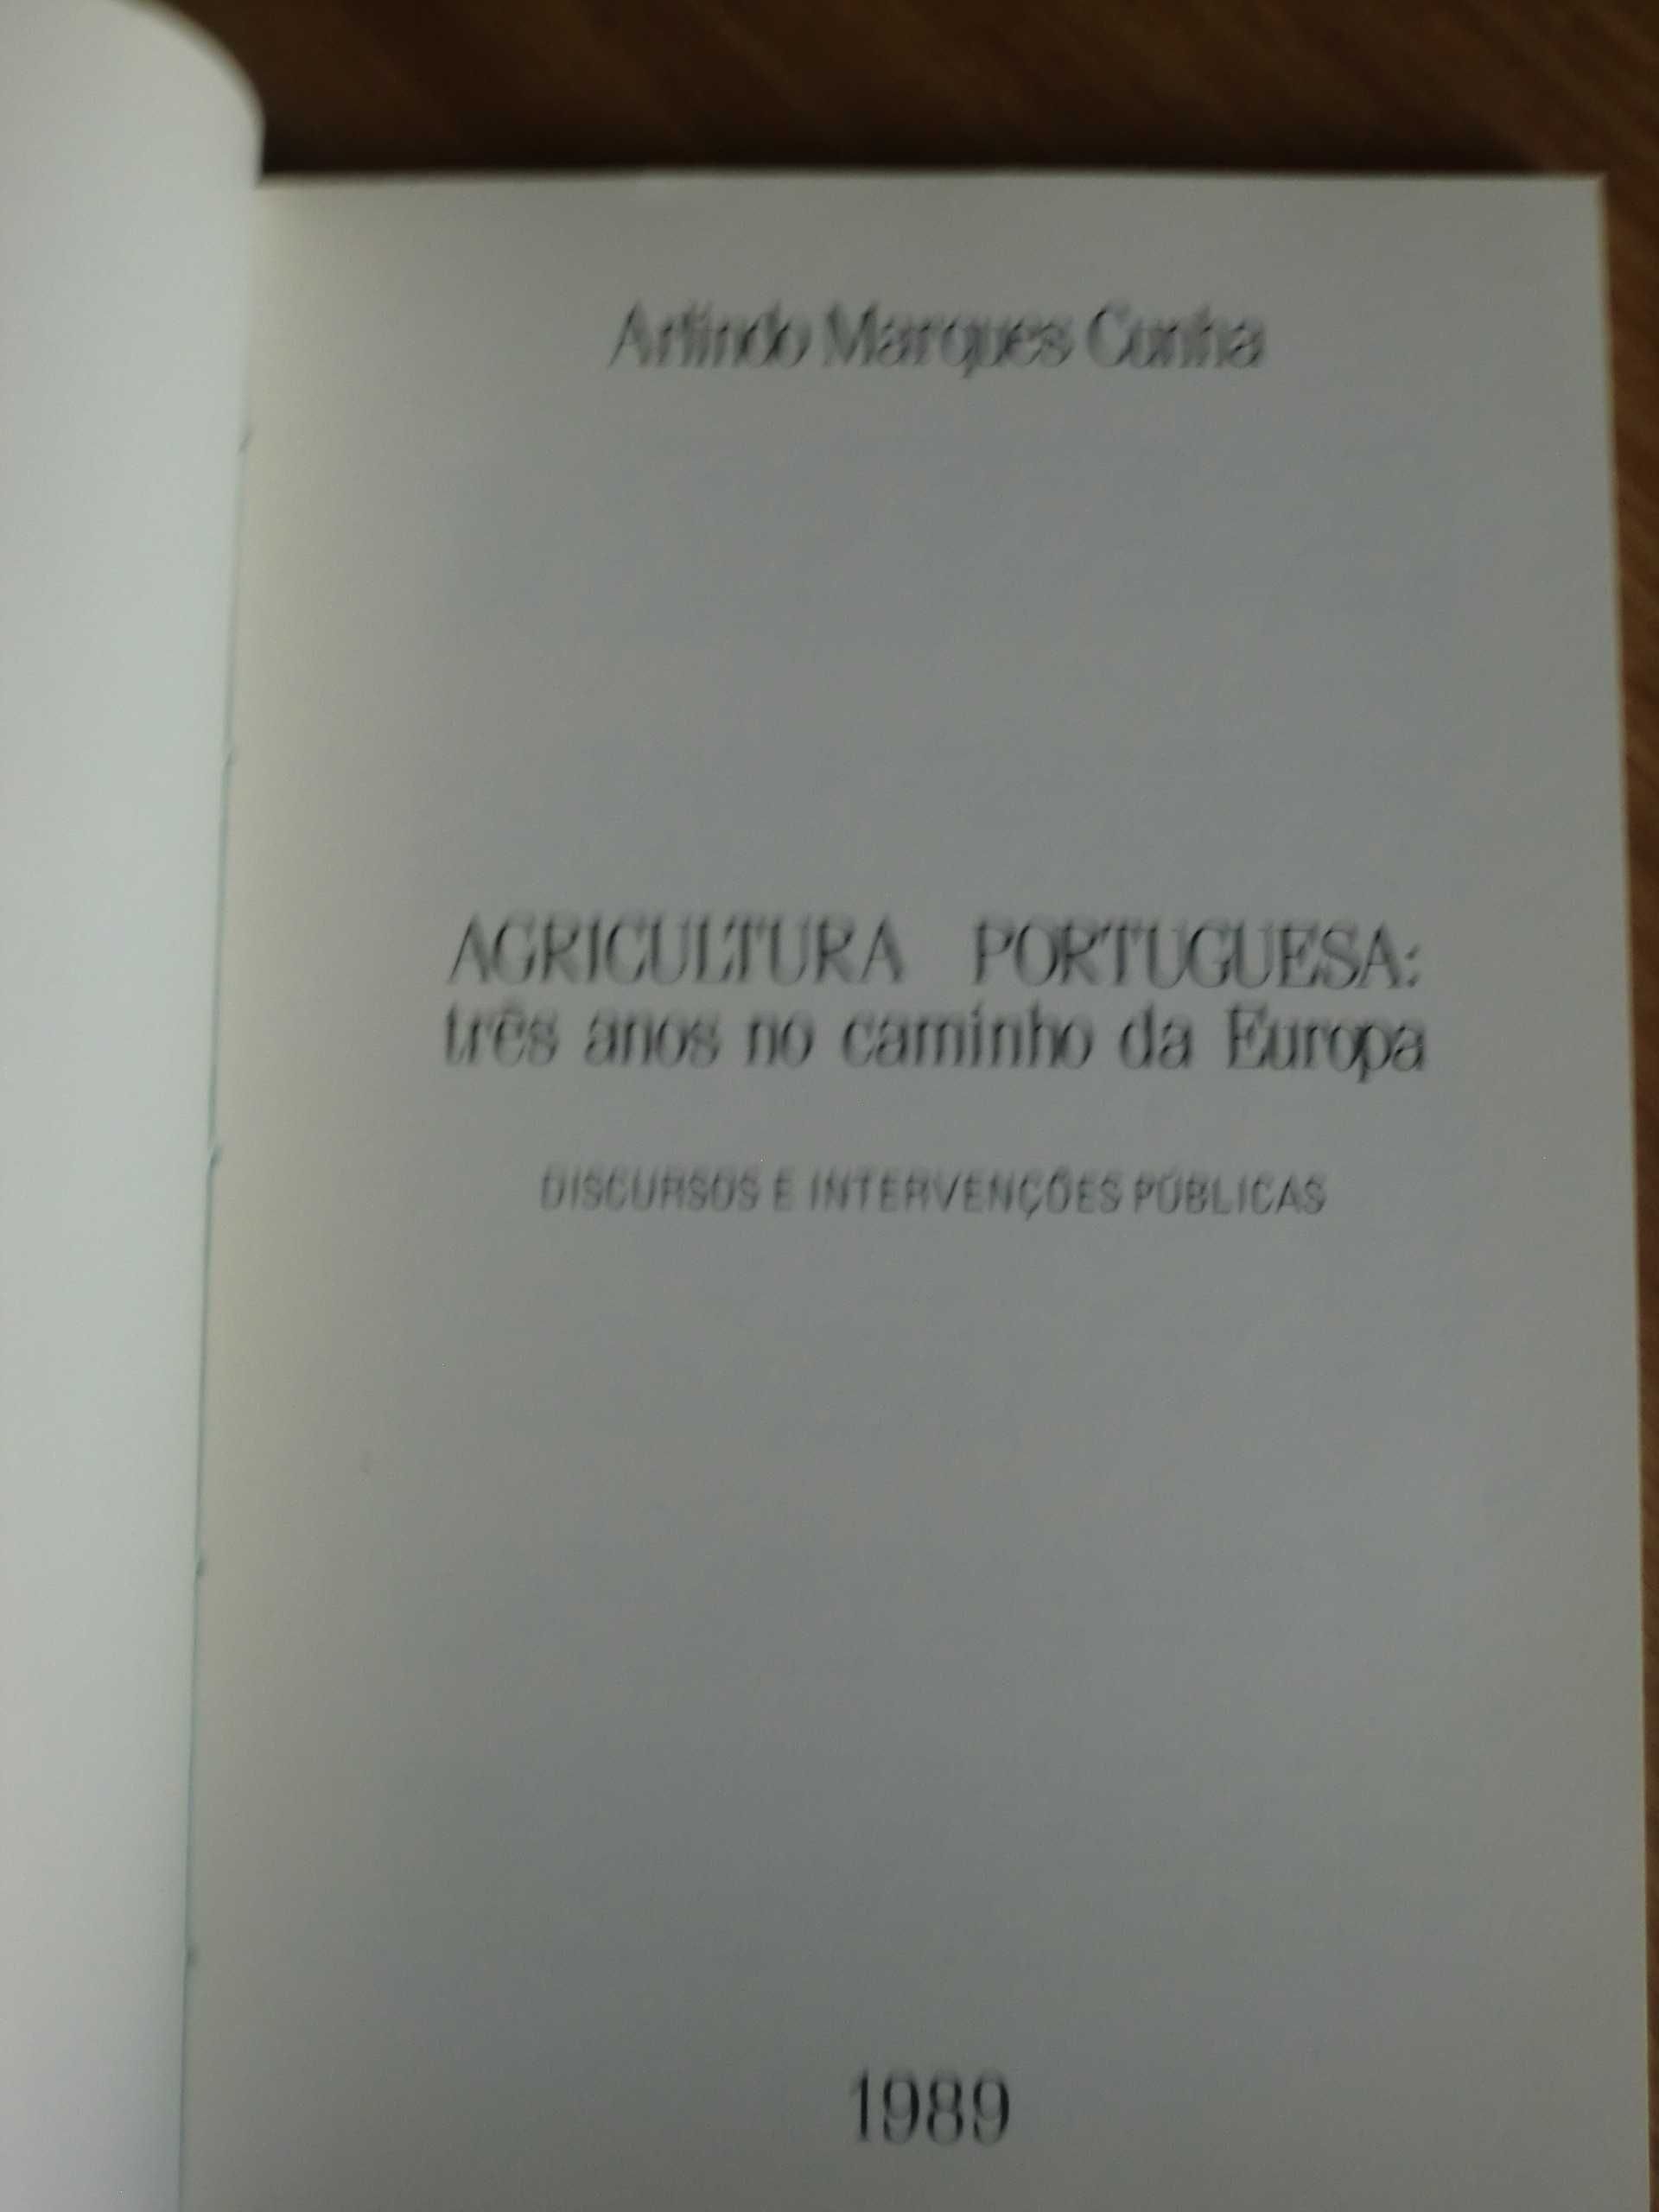 Agricultura Portuguesa três anos no caminho da Europa
Arlindo M. Cunha